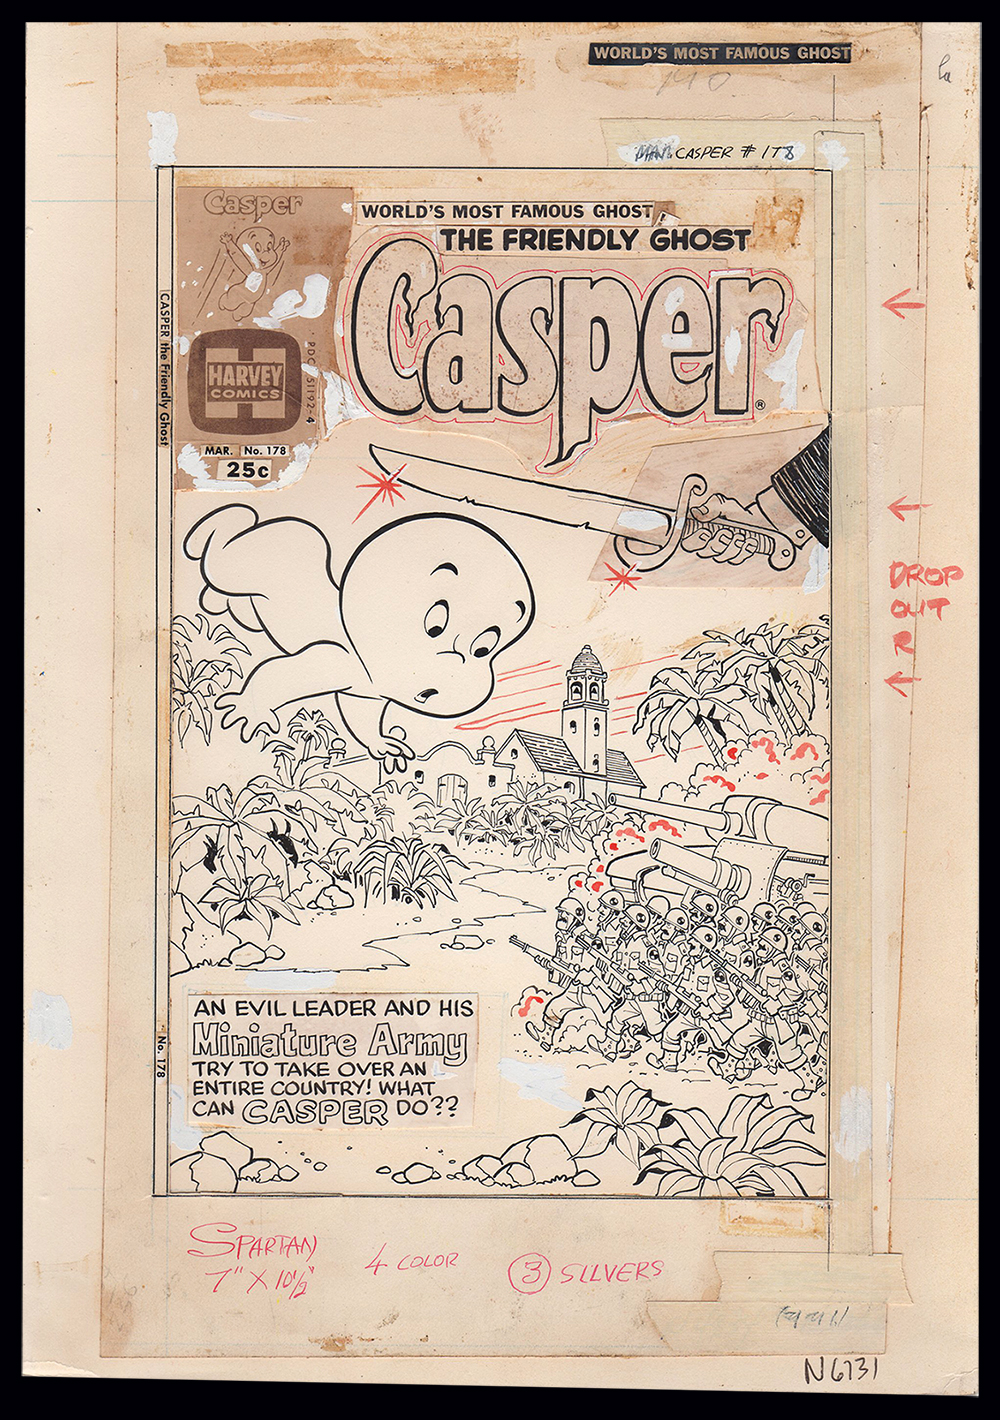 Image: Casper the Friendly Ghost #178 Cover Art by Warren Kremer